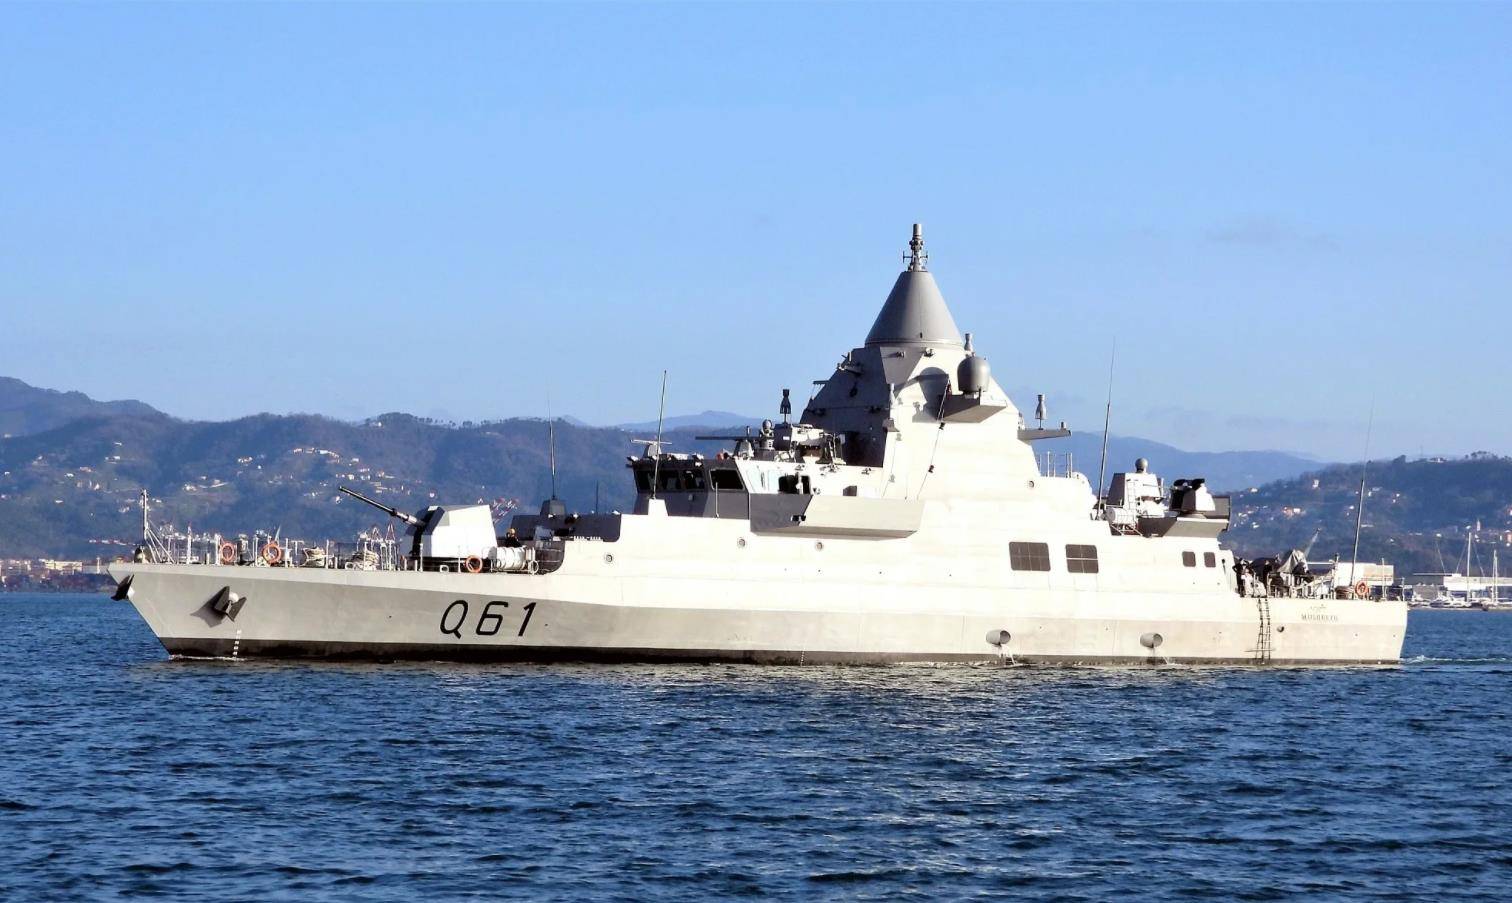 首艘穆舍里布级巡逻舰到货,武器多样化,担负海上监视重任!